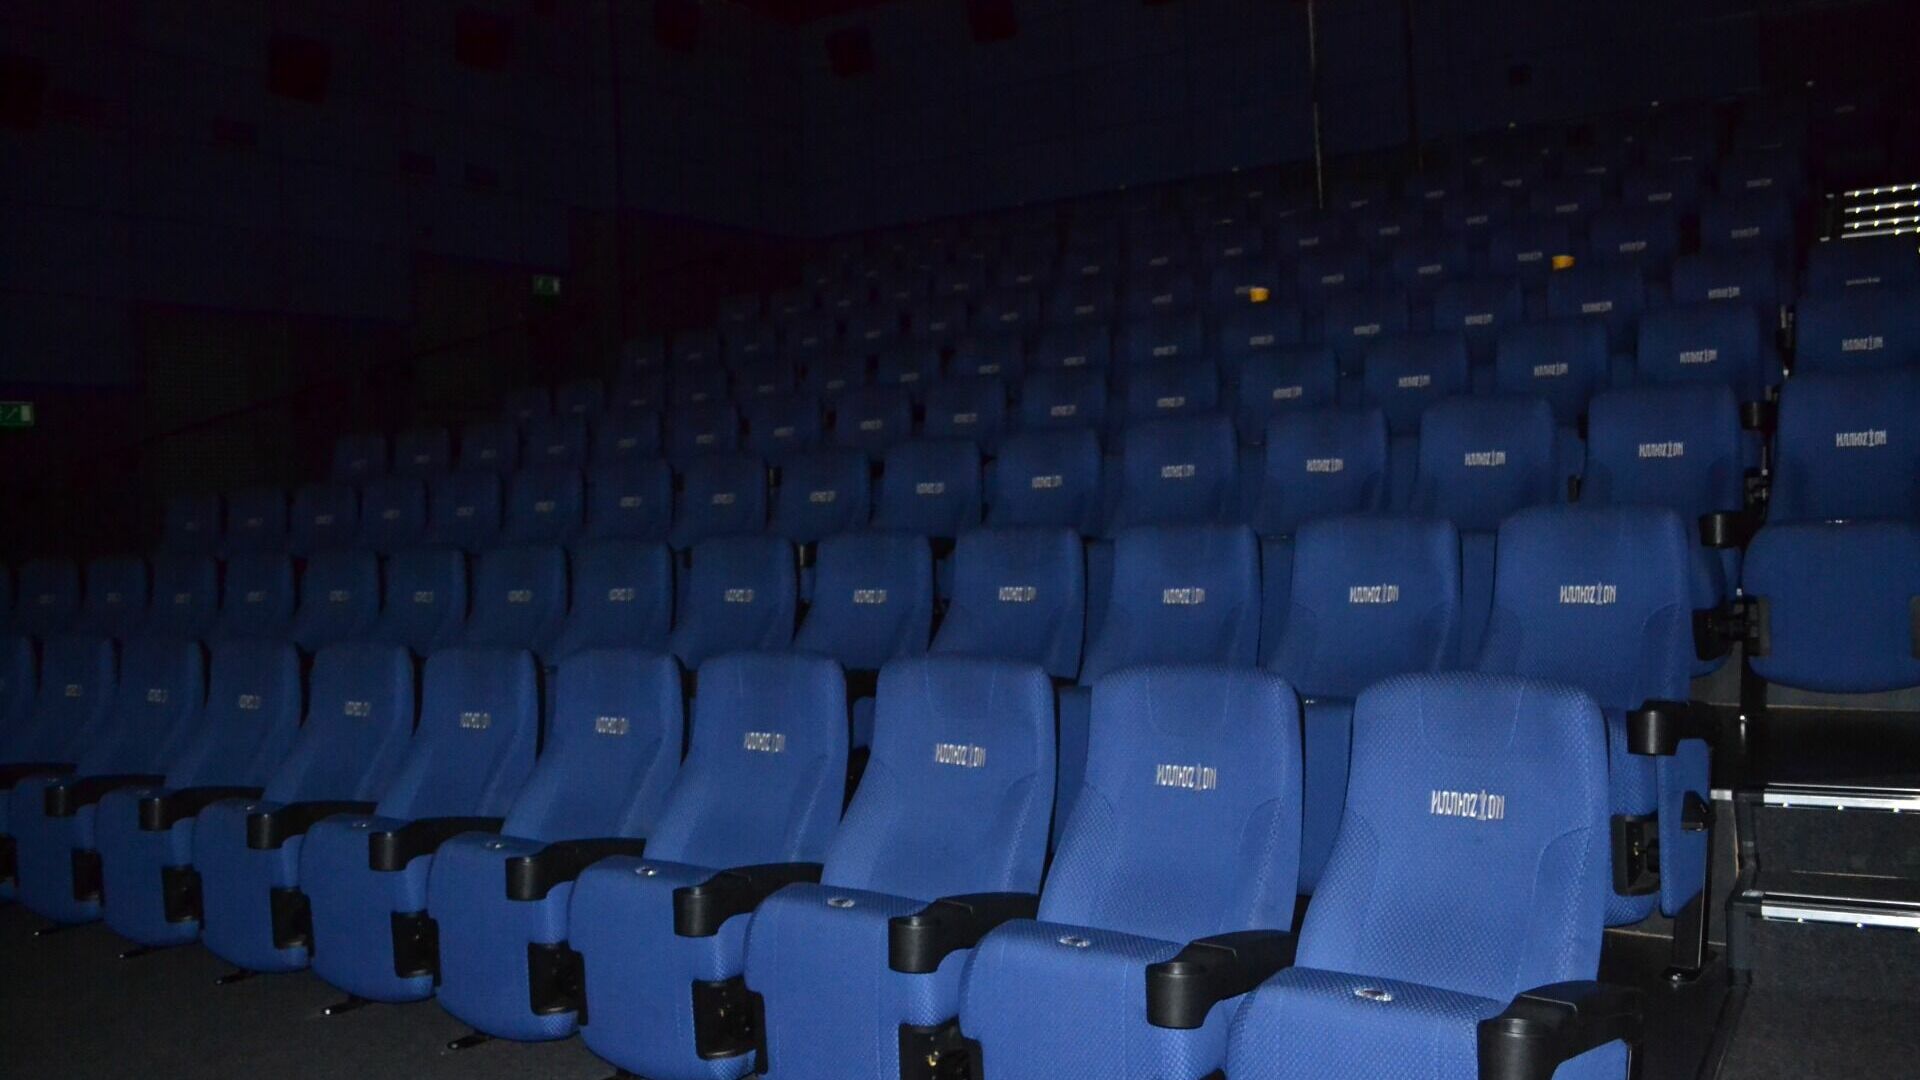 Кинотеатры показывают иностранные фильмы по теневой договоренности 